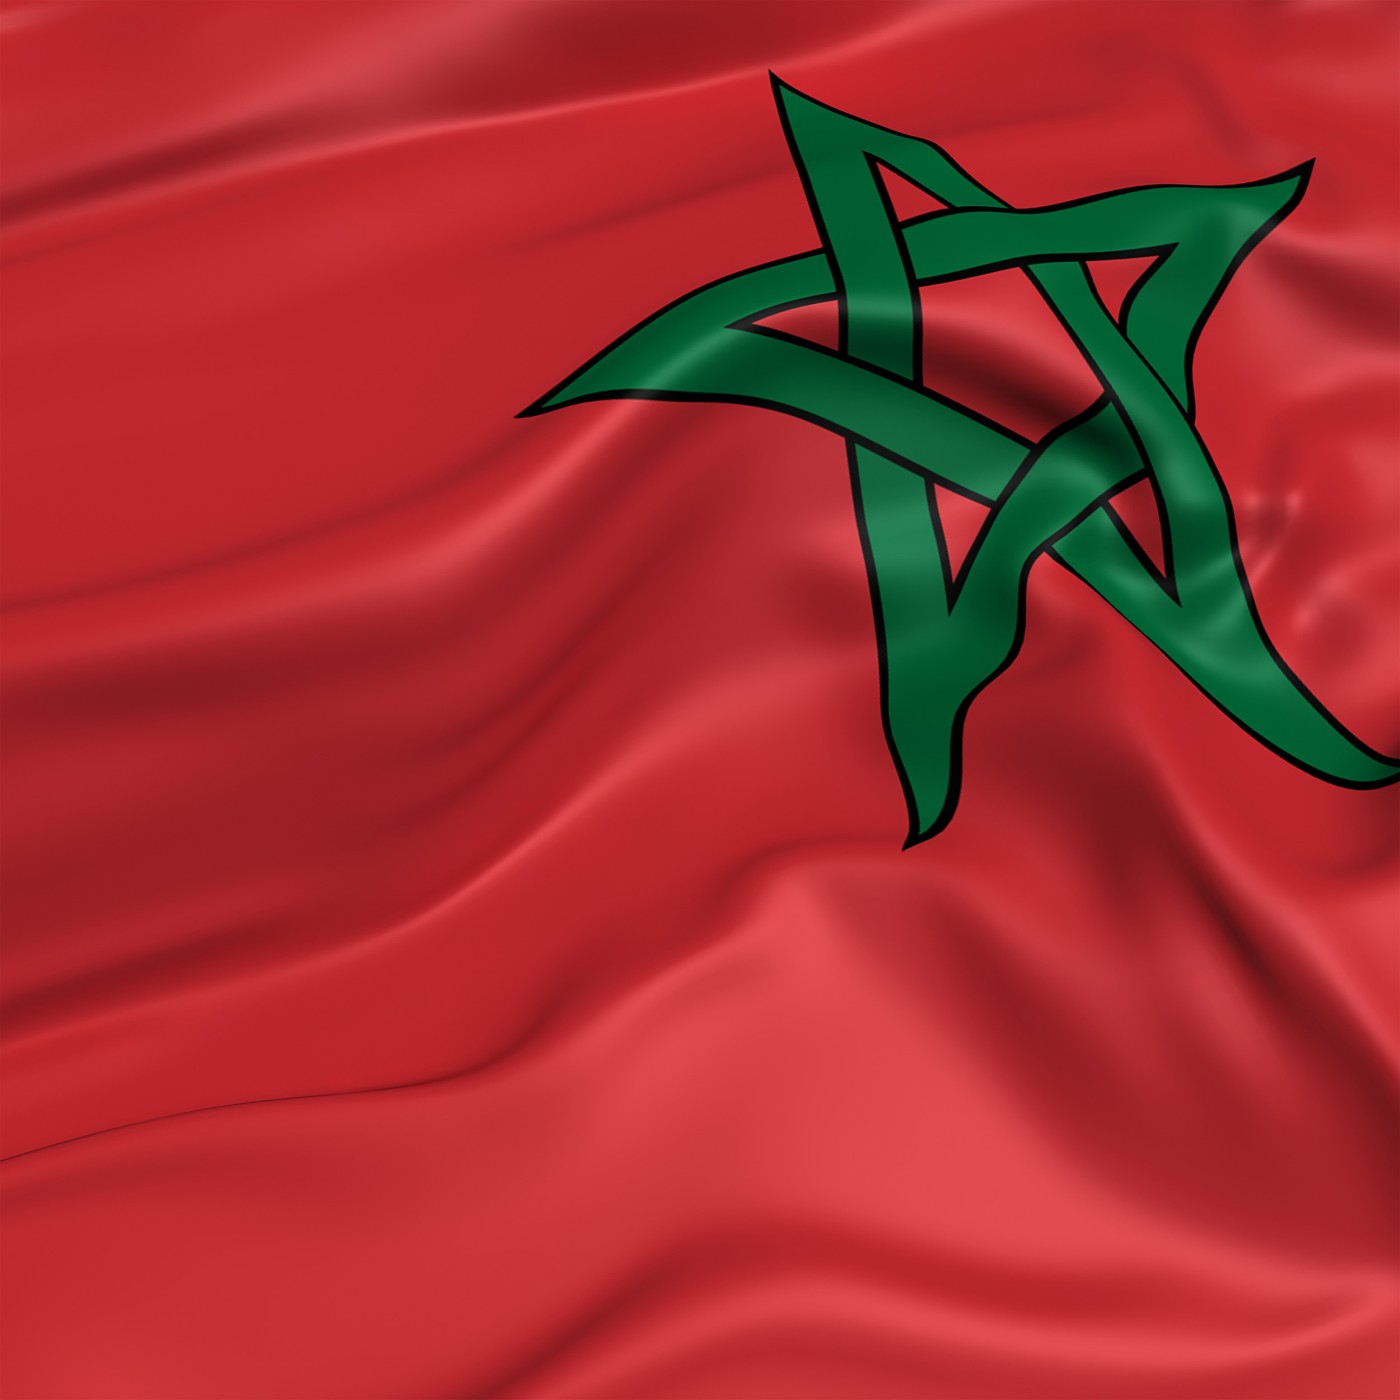 PODCAST SOLIDAIRE – Paroles solidaires – Séïsme au Maroc, Jérémie Rossetti, ADRA France